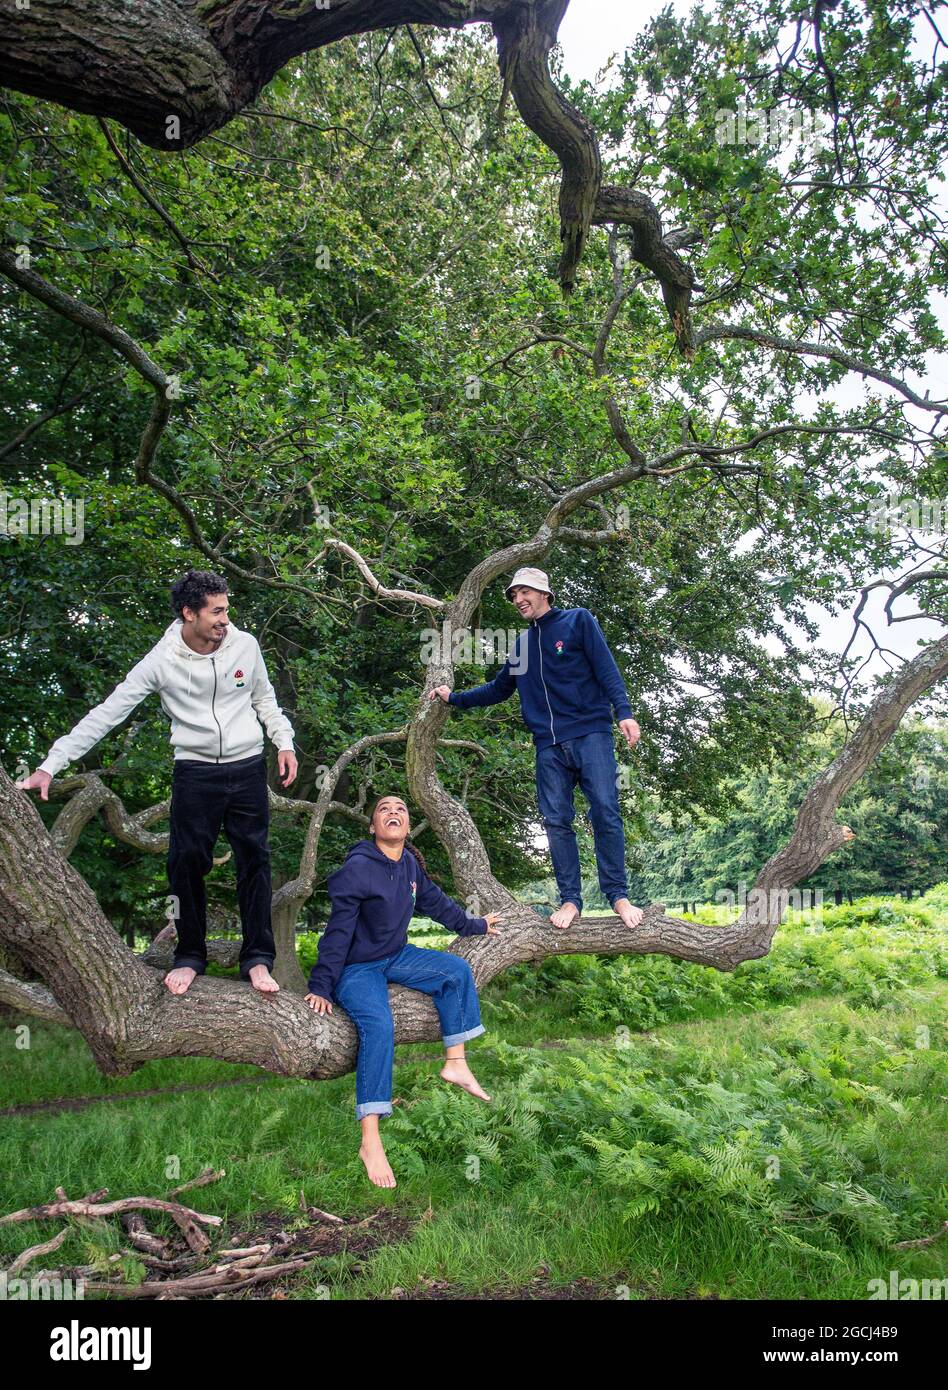 Gruppe junger Menschen im Park, die einen Baum klettern Stockfoto